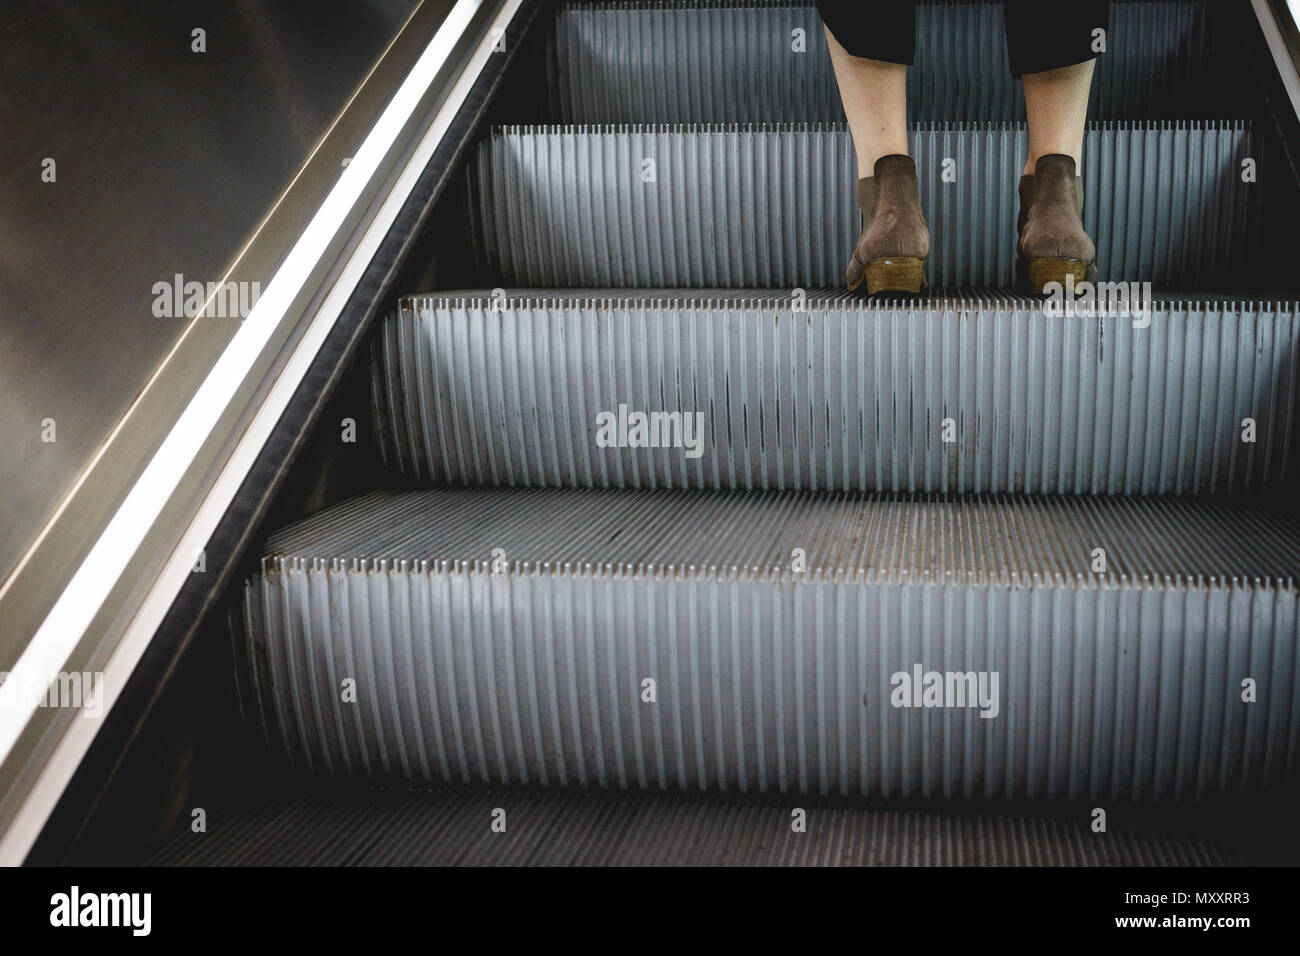 London, UK, September 2017. Unten Beine einer Frau das Tragen von Stiefeln auf ein Schritt der Fahrstuhl stehen. Querformat. Stockfoto